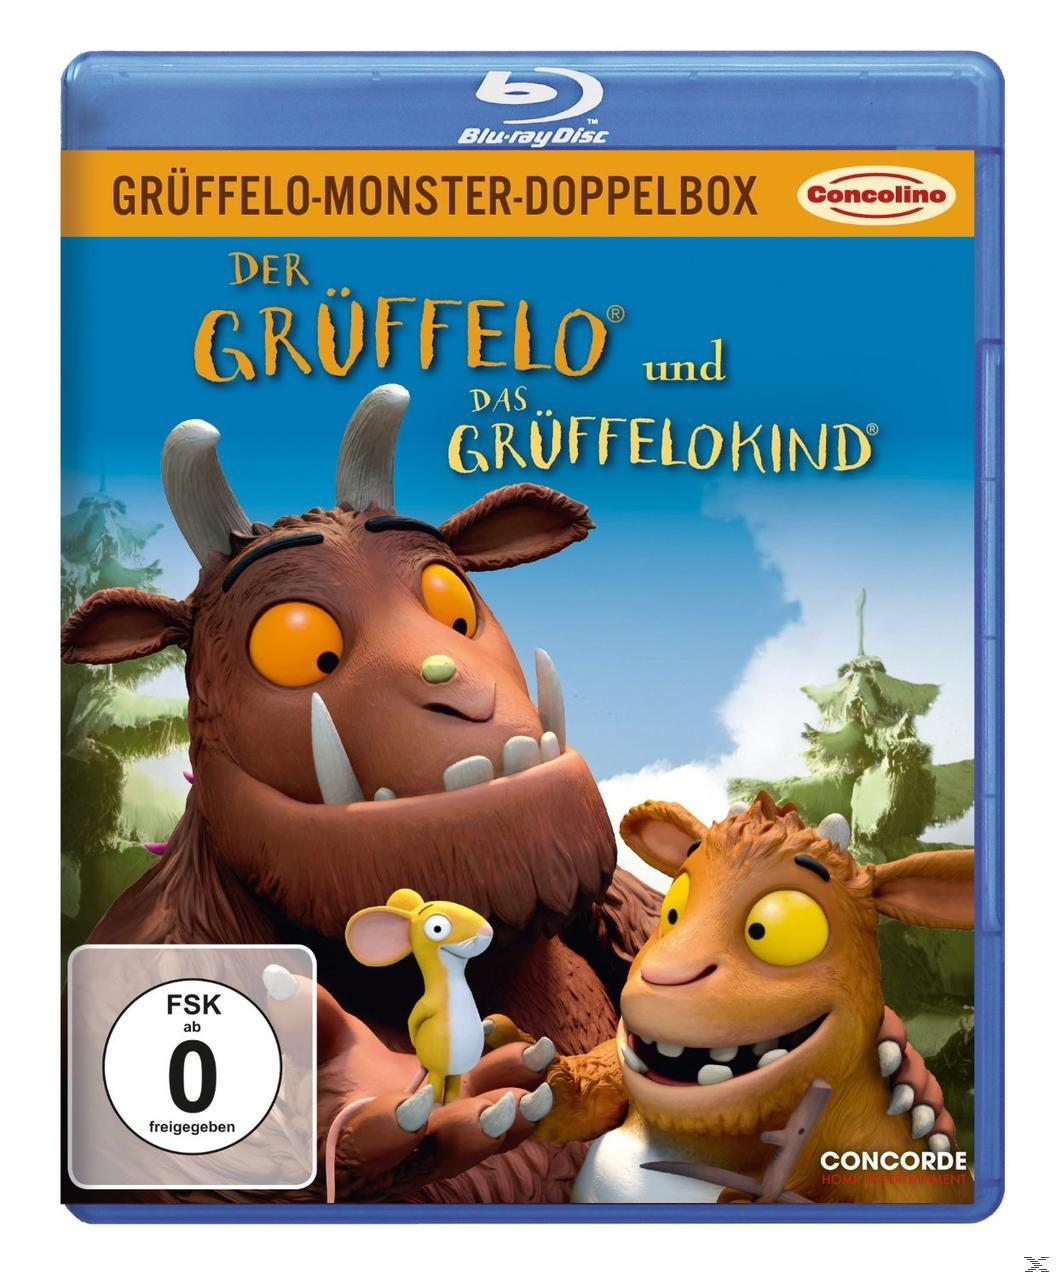 Grüffelo-Monster-Doppelbox Das Grüffelo Grüffelokind Blu-ray und - Der